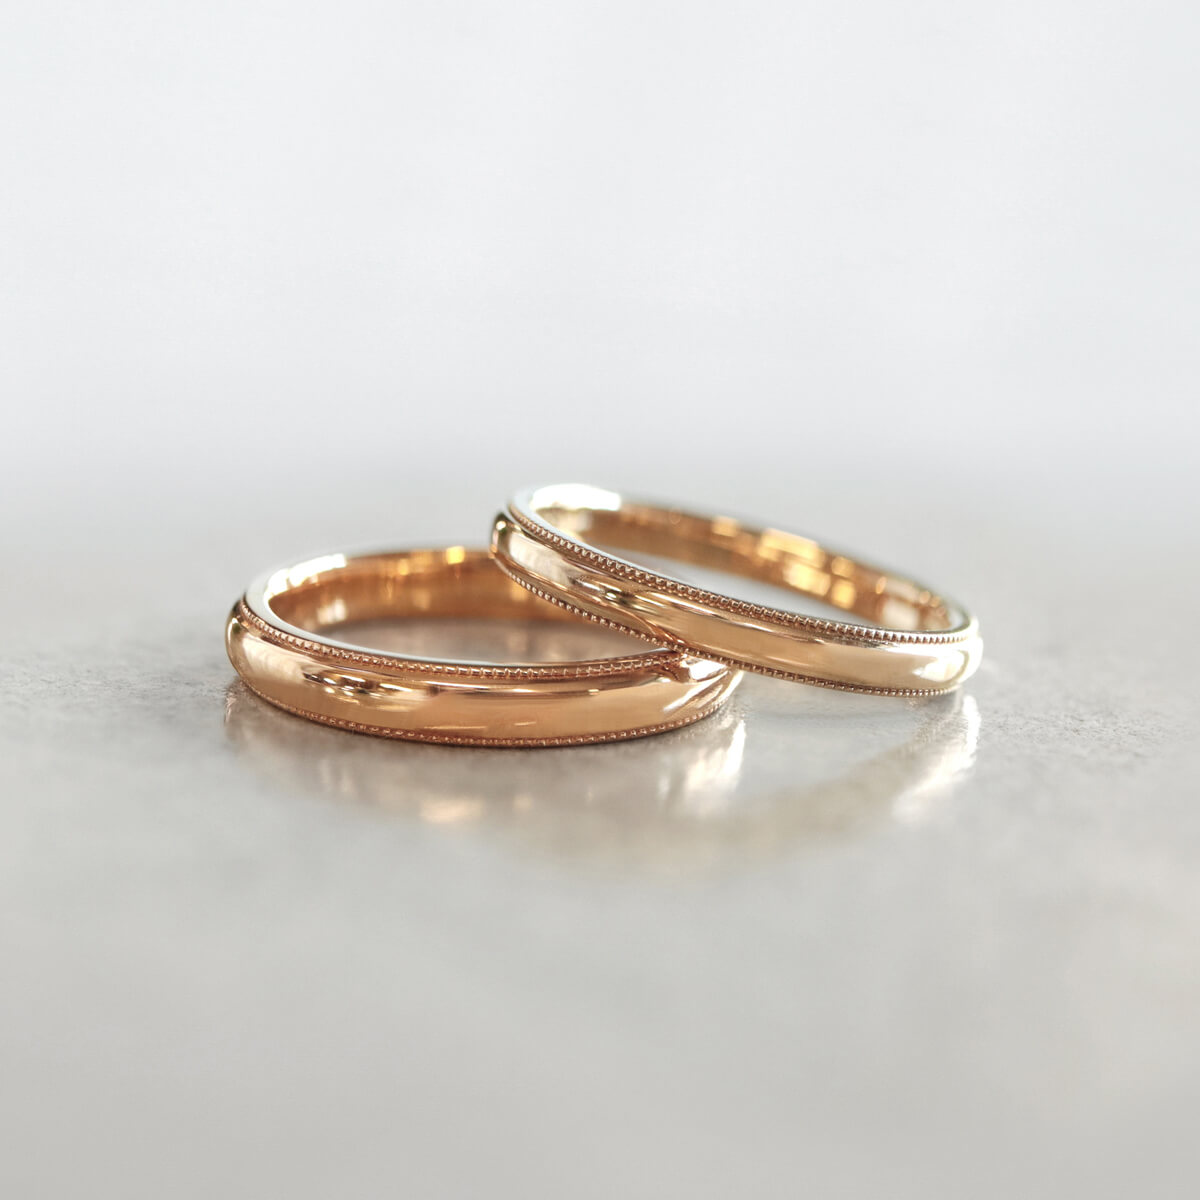 手工制作的结婚戒指，庆祝一对新人共同生活的开始。